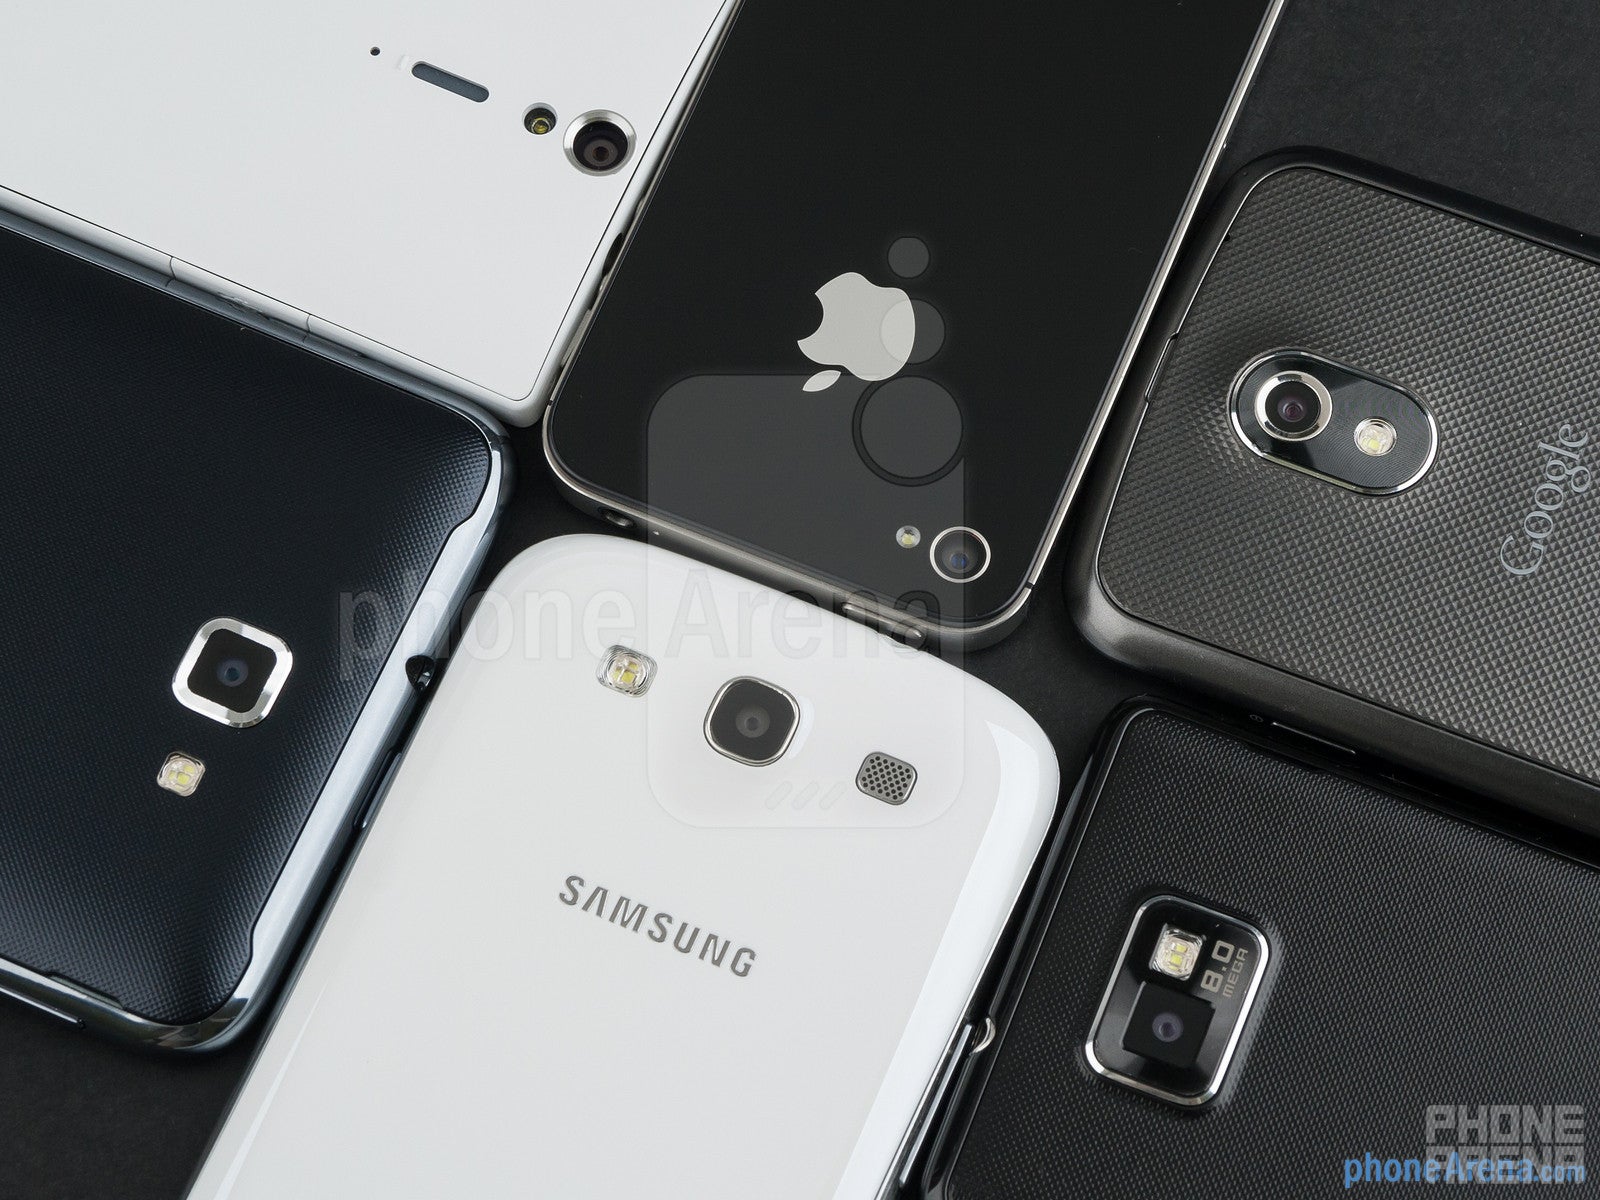 Camera comparison: Samsung Galaxy S III vs the fierce competition